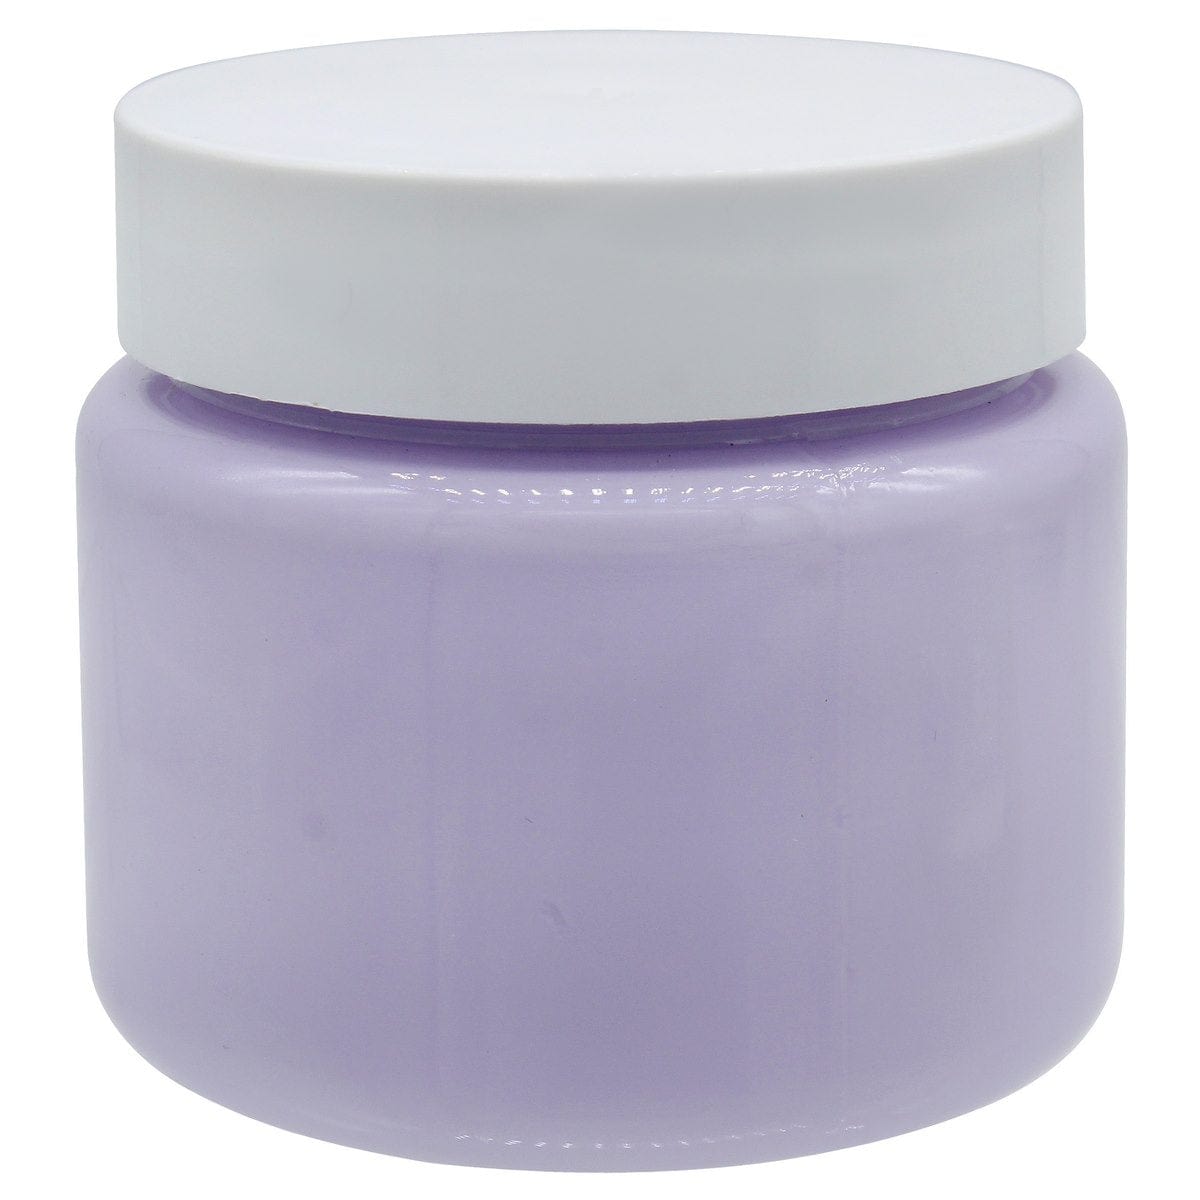 jags-mumbai Chalk Paint Chalk Paint Antique Premium Lavender 125ML CPAP04